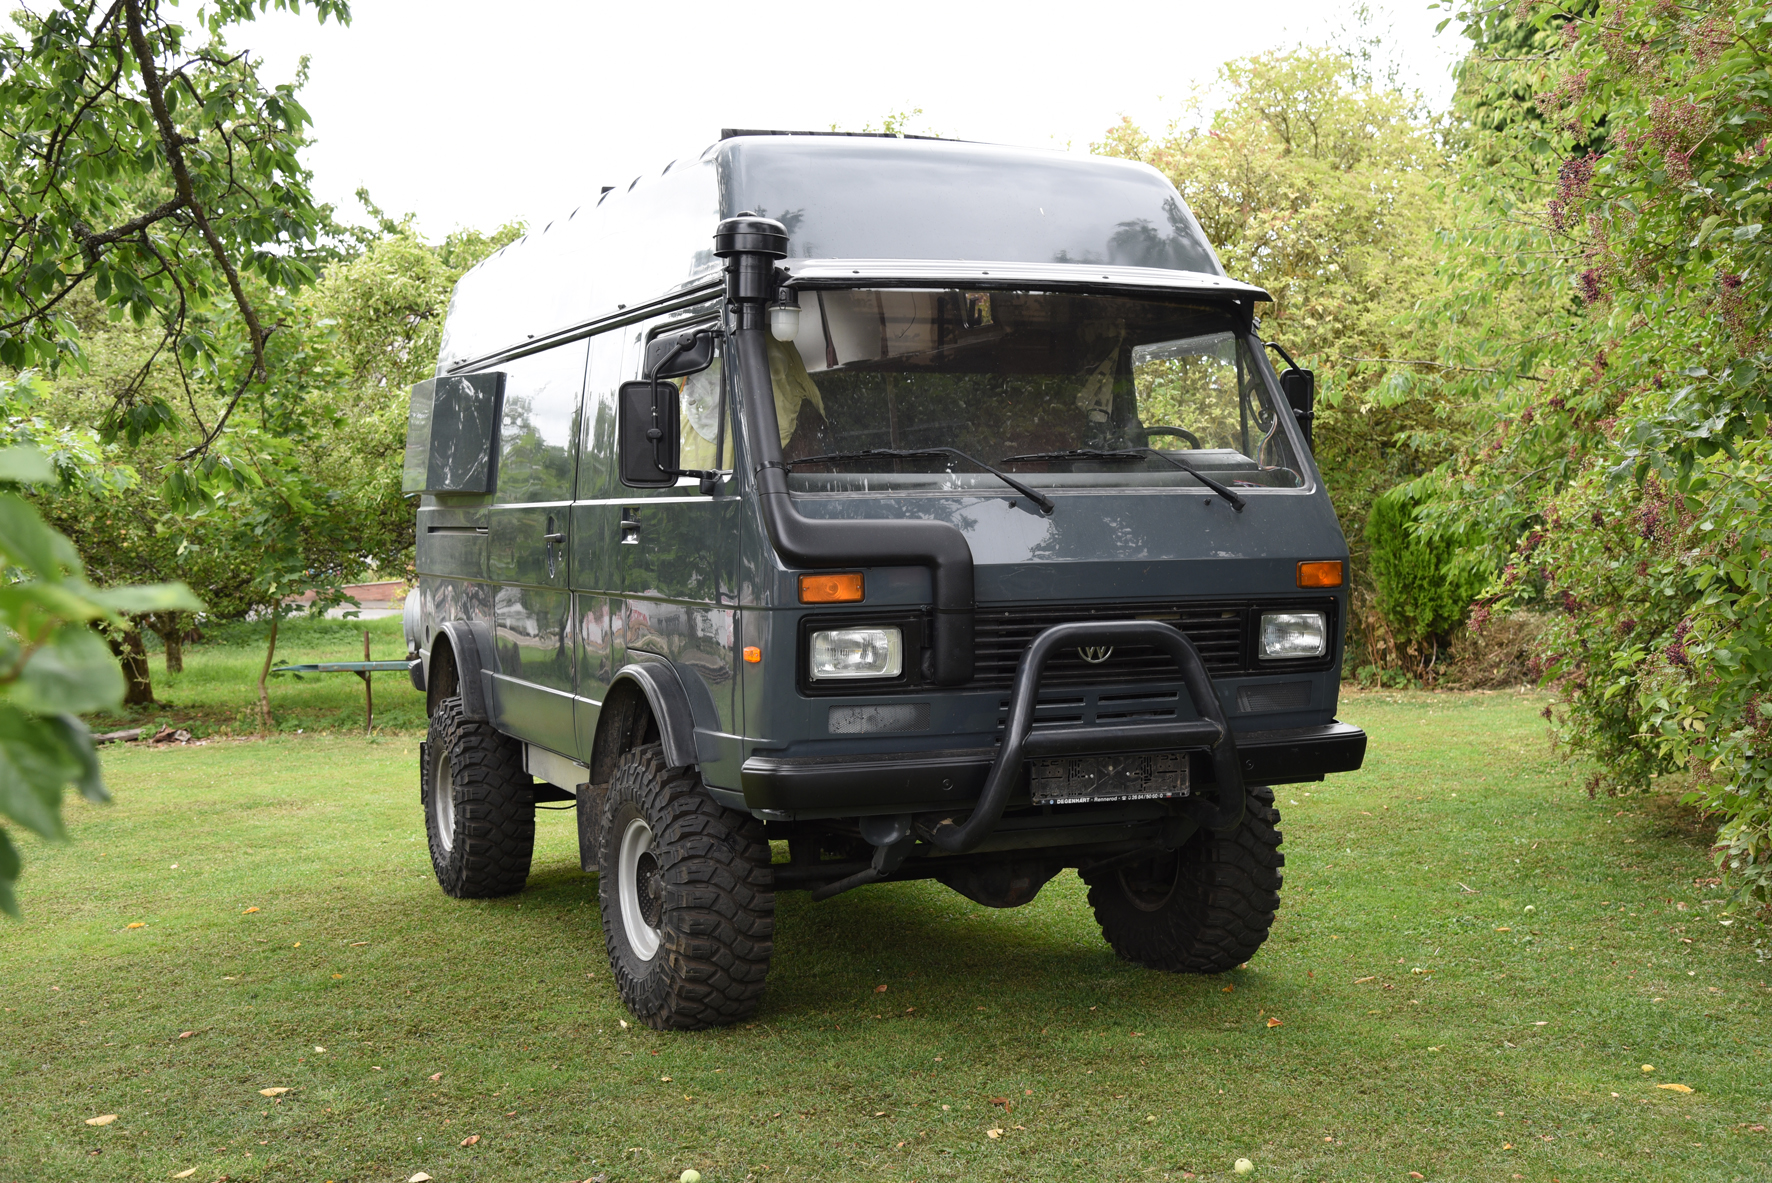 4x4 vans for sale uk